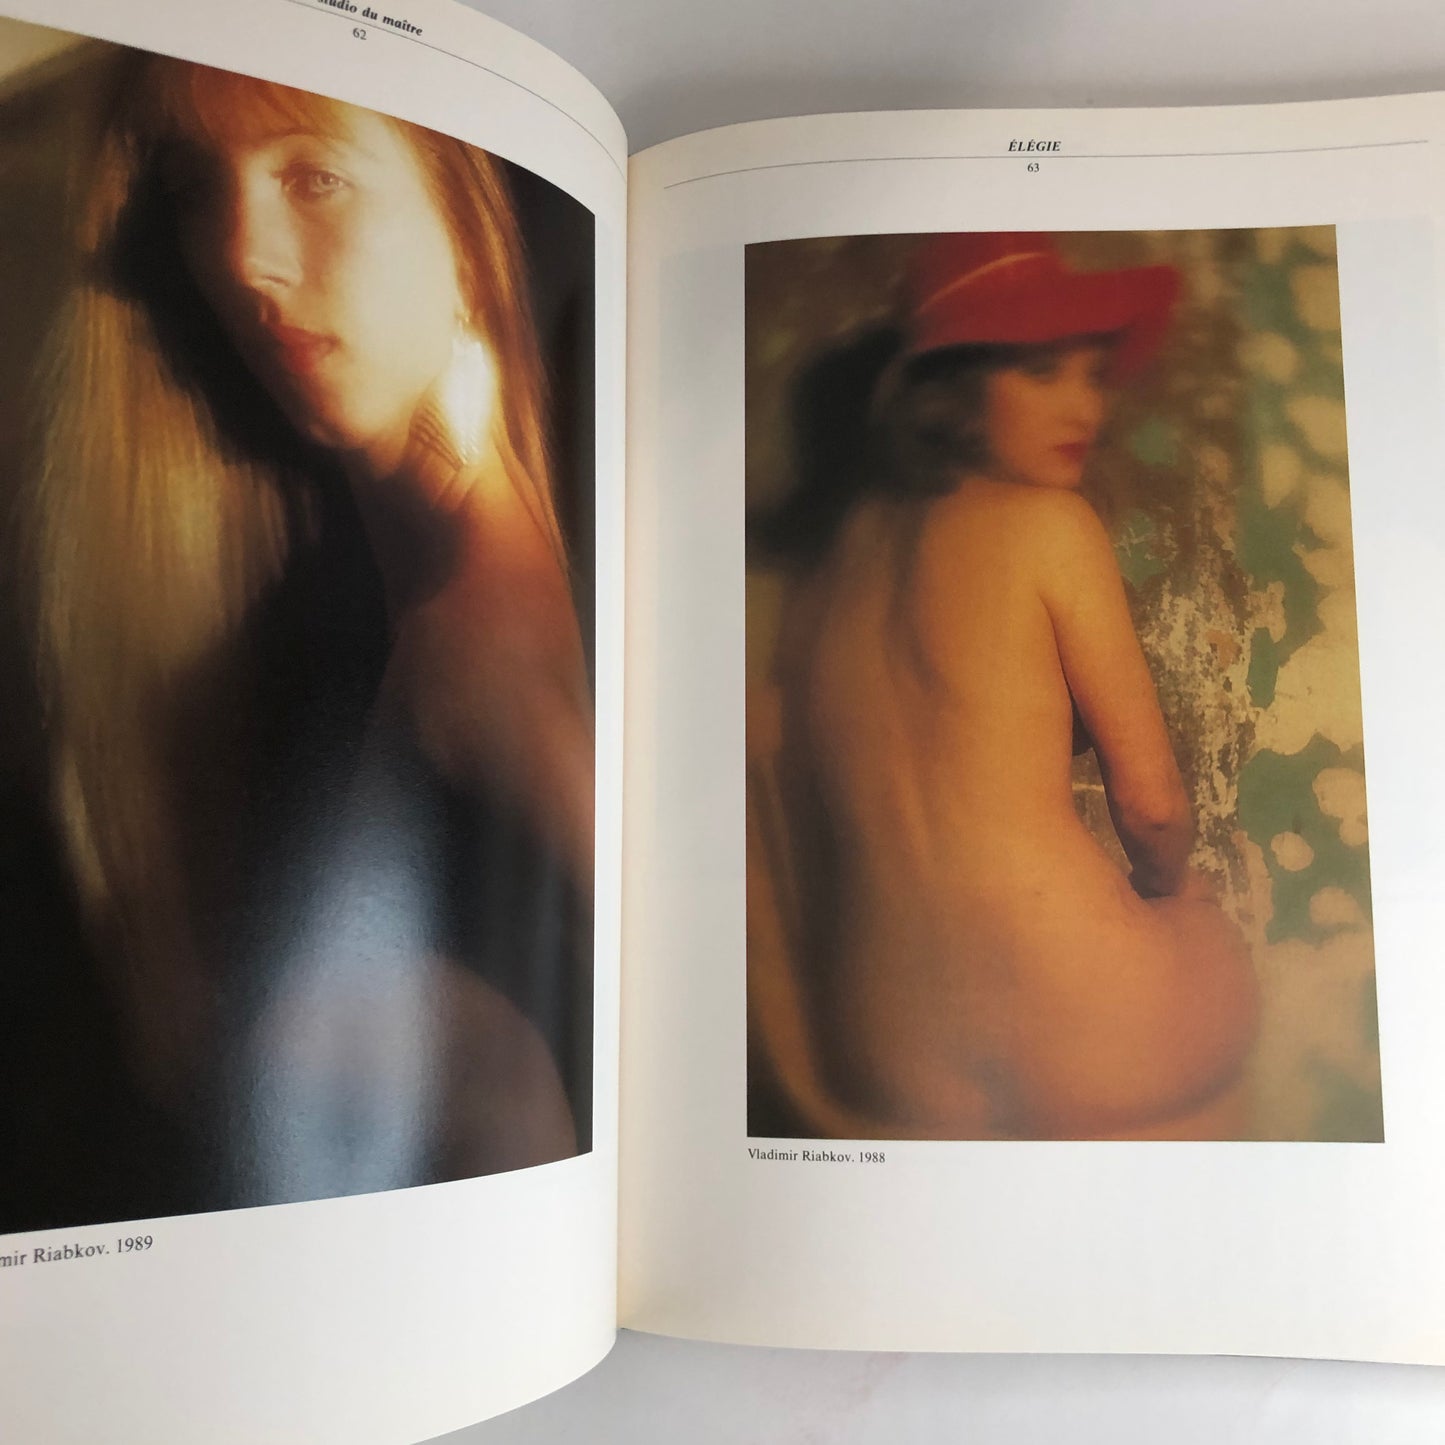 E´le´gie: Le nu dans la photo d'art